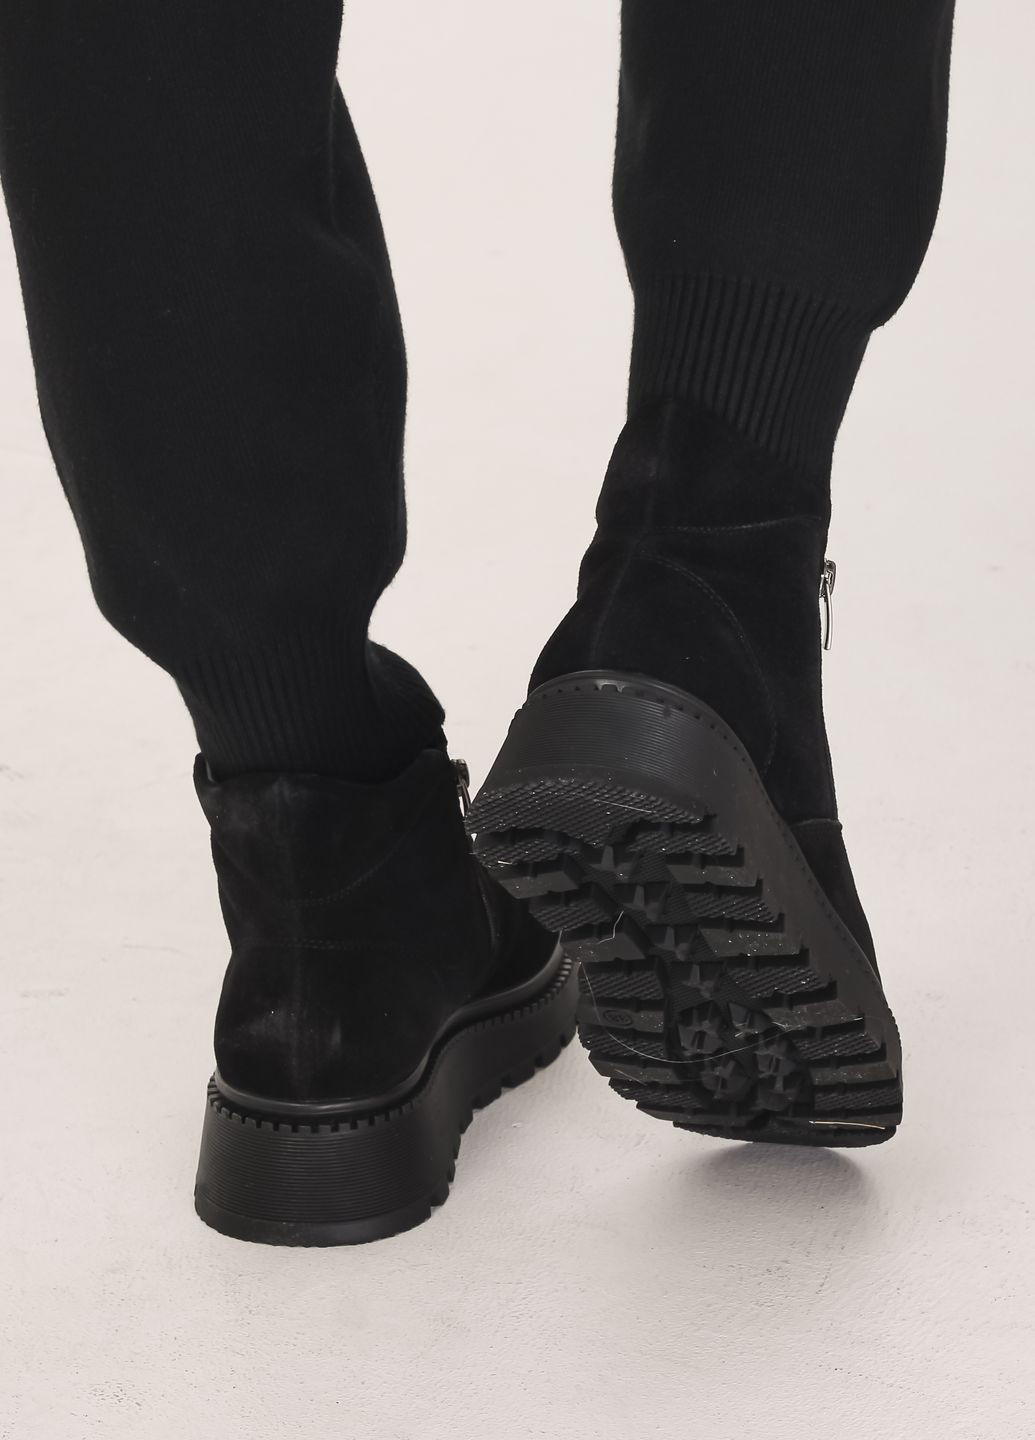 ботинки женские зимние черные замшевые Kento из натуральной замши